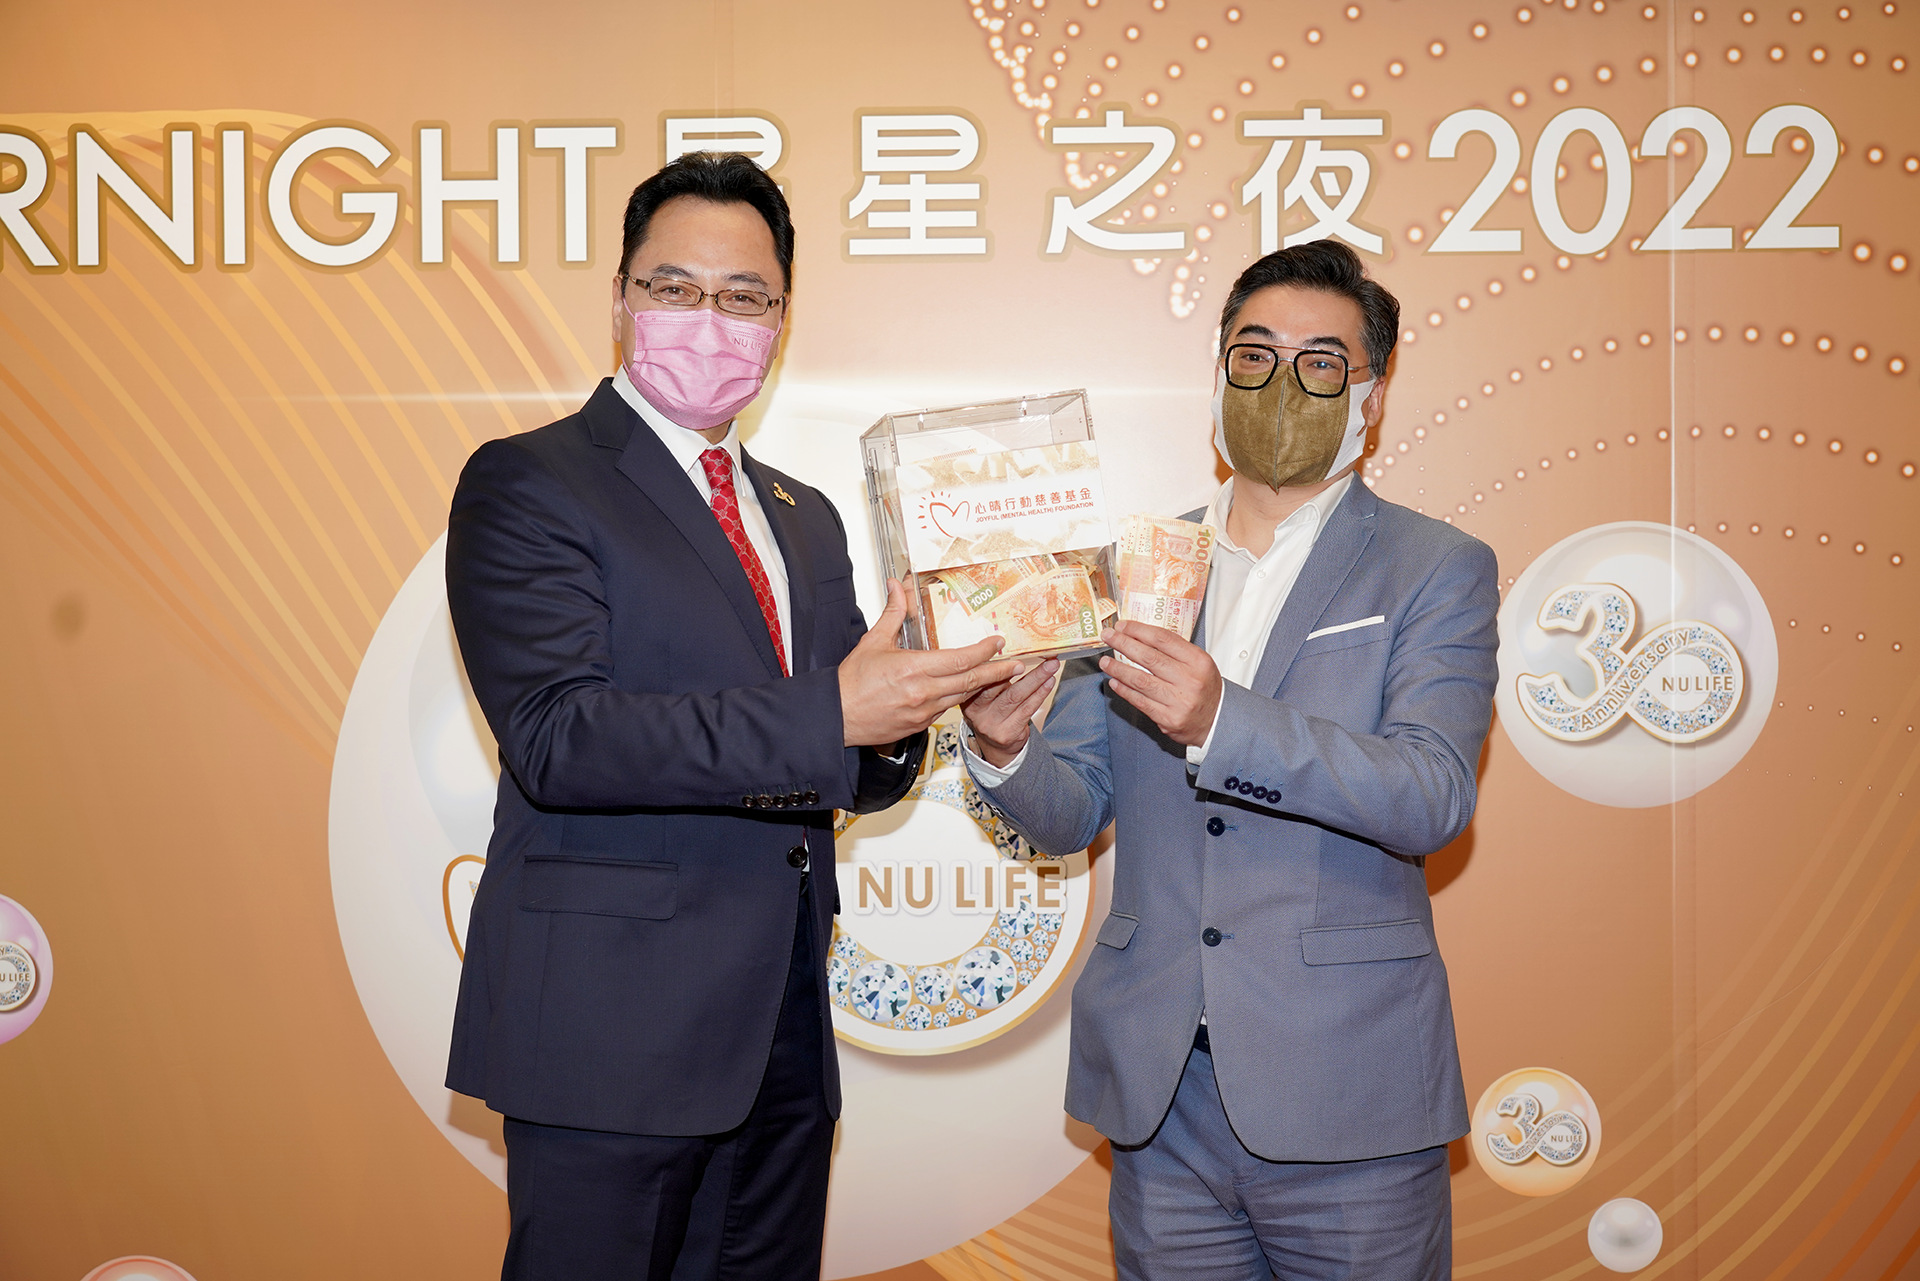 恭賀盧德輝先生從星級百萬富翁遊戲贏取HK$10,000獎金並與公司合共捐助HK$4000予「心晴行動慈善基金」